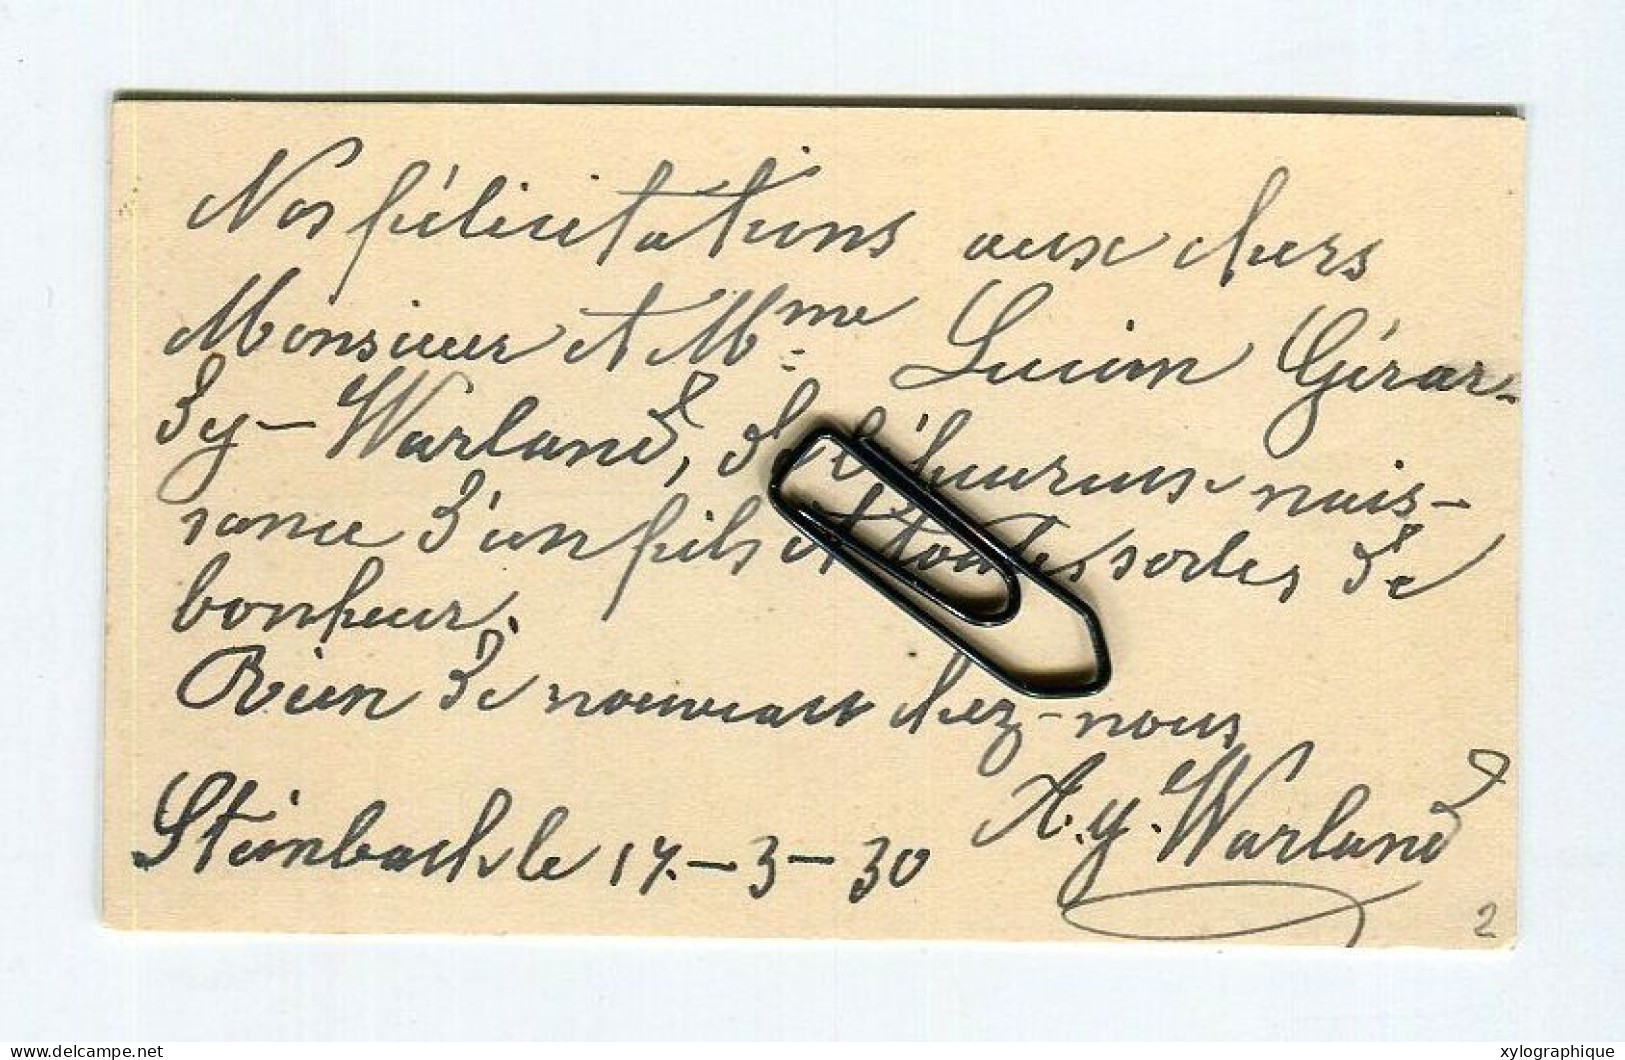 STEINBACH (Gouvy Limerlé) - Carte De Visite 1930, Voir Verso, Warland Meinguet, Pour Famille Gérardy Warland - Cartes De Visite